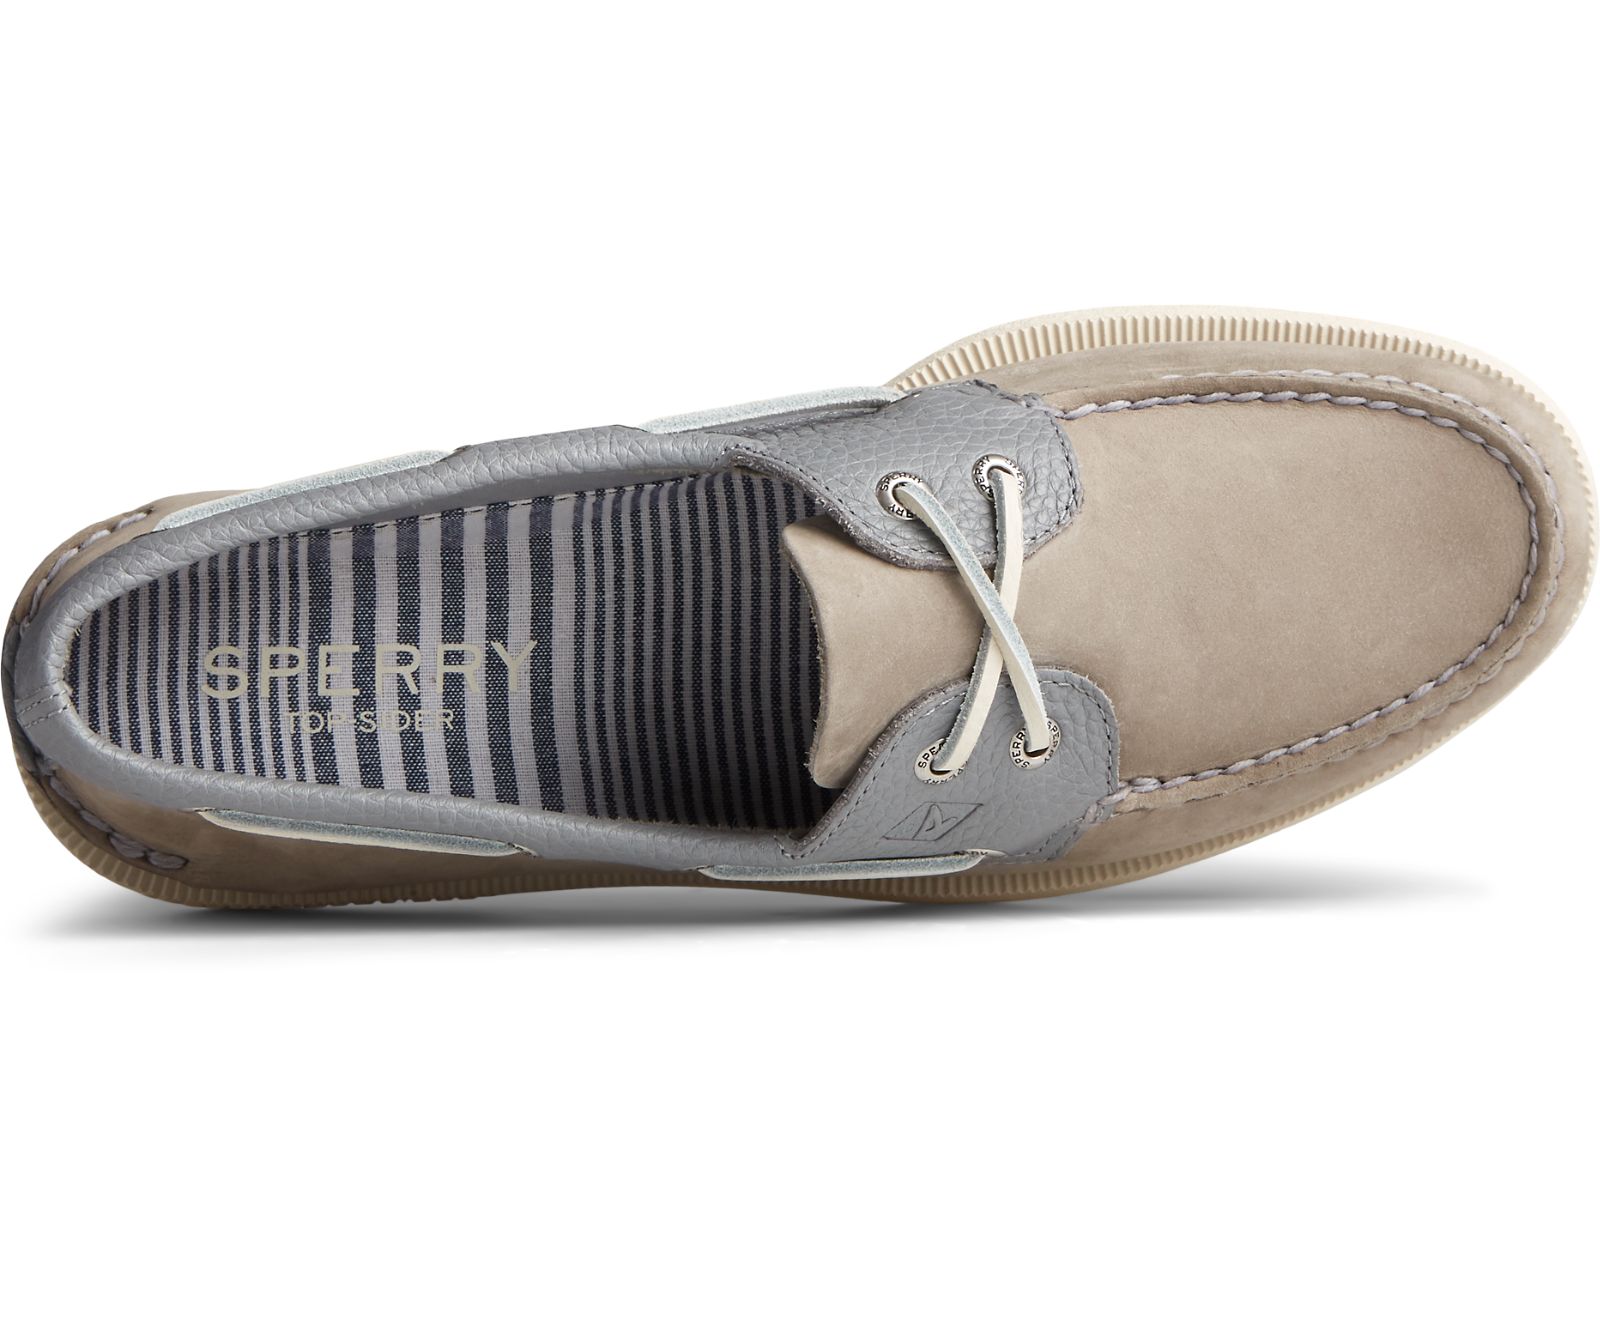 Men's Authentic Original 2-Eye Tumbled Leather Nubuck Boat Shoe - Grey